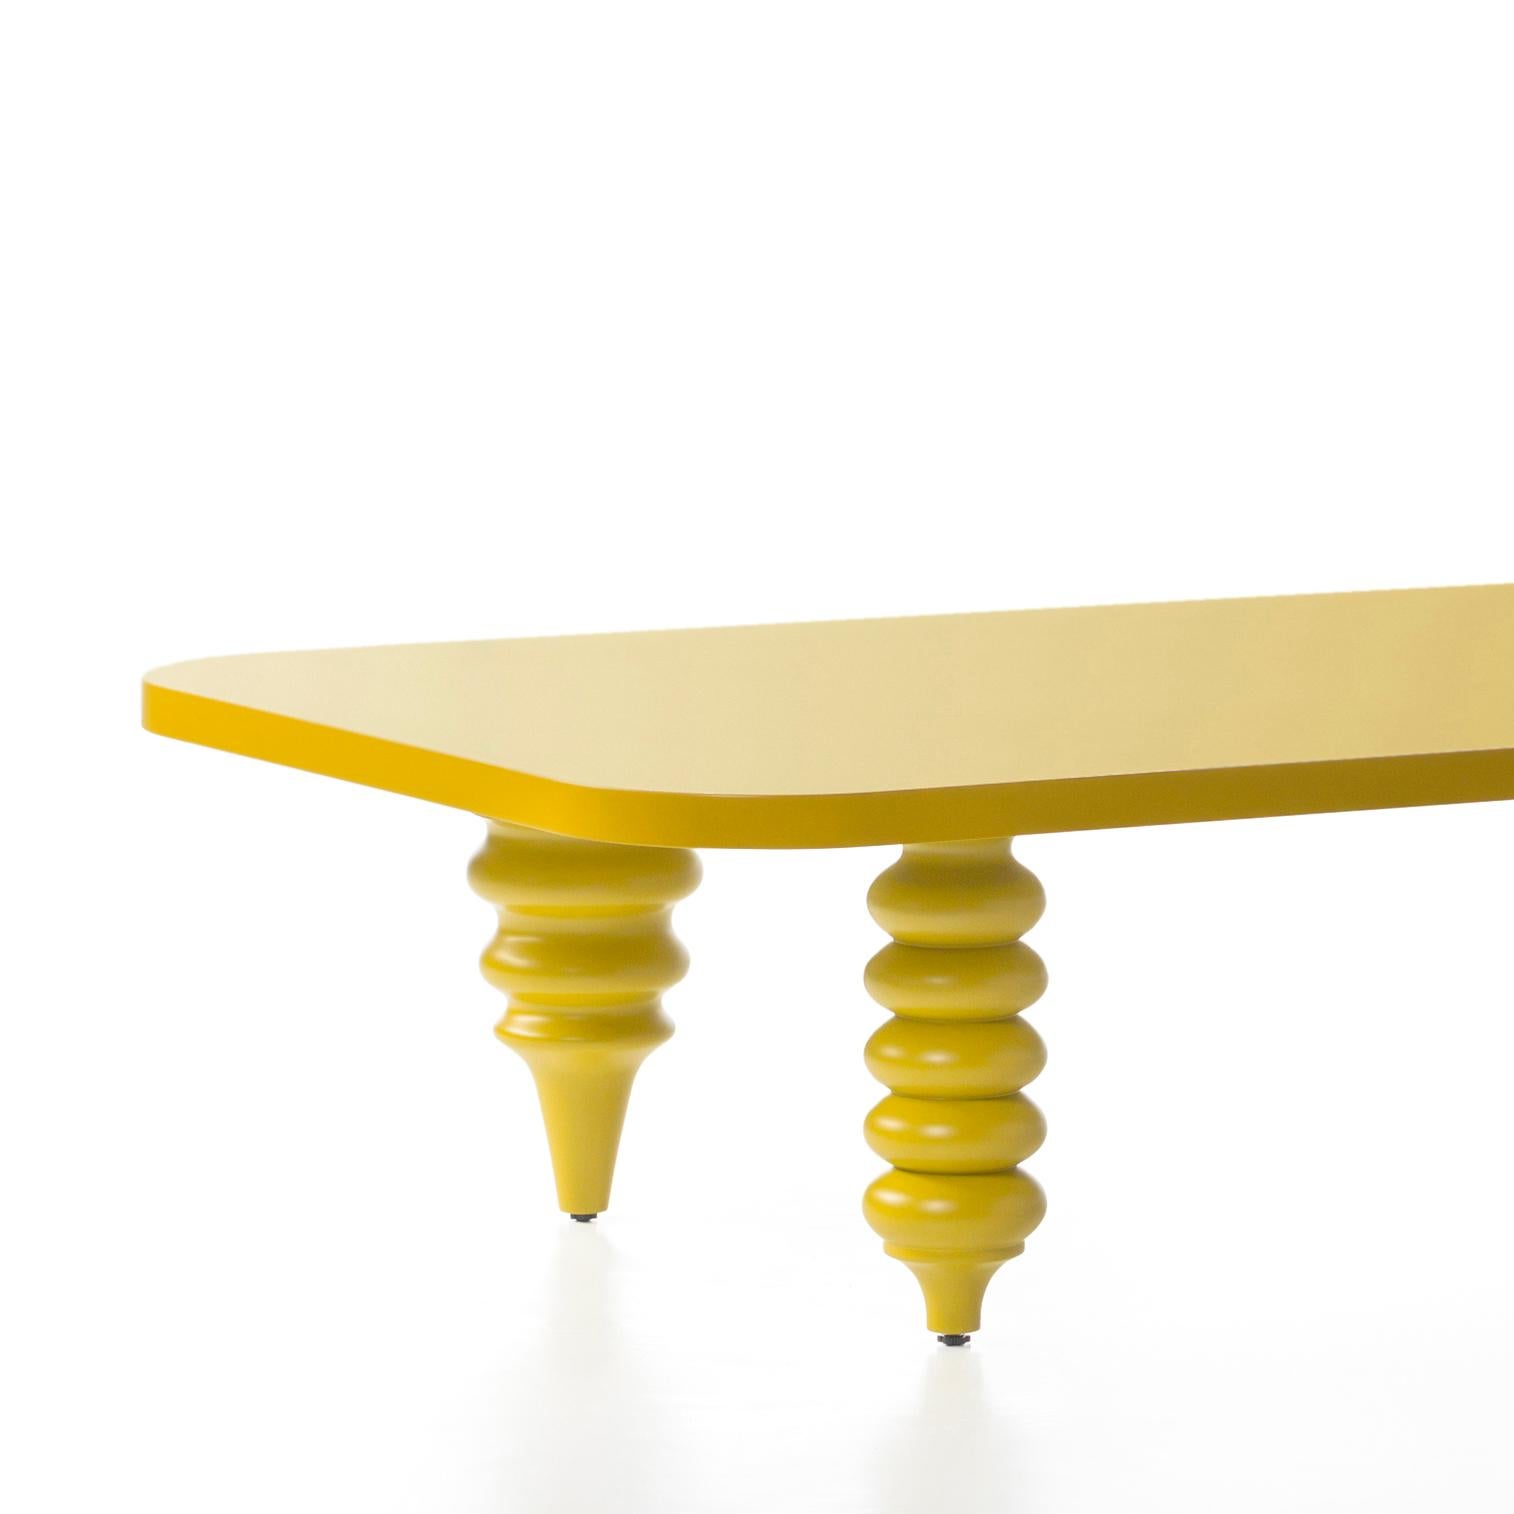 Table basse conçue par Jaime Hayon et fabriquée à Barcelone par BD.

Base en MDF et pieds en bois d'aulne massif tourné, laqué en jaune.

Mesures : 50 x 150 x H 35 cm.